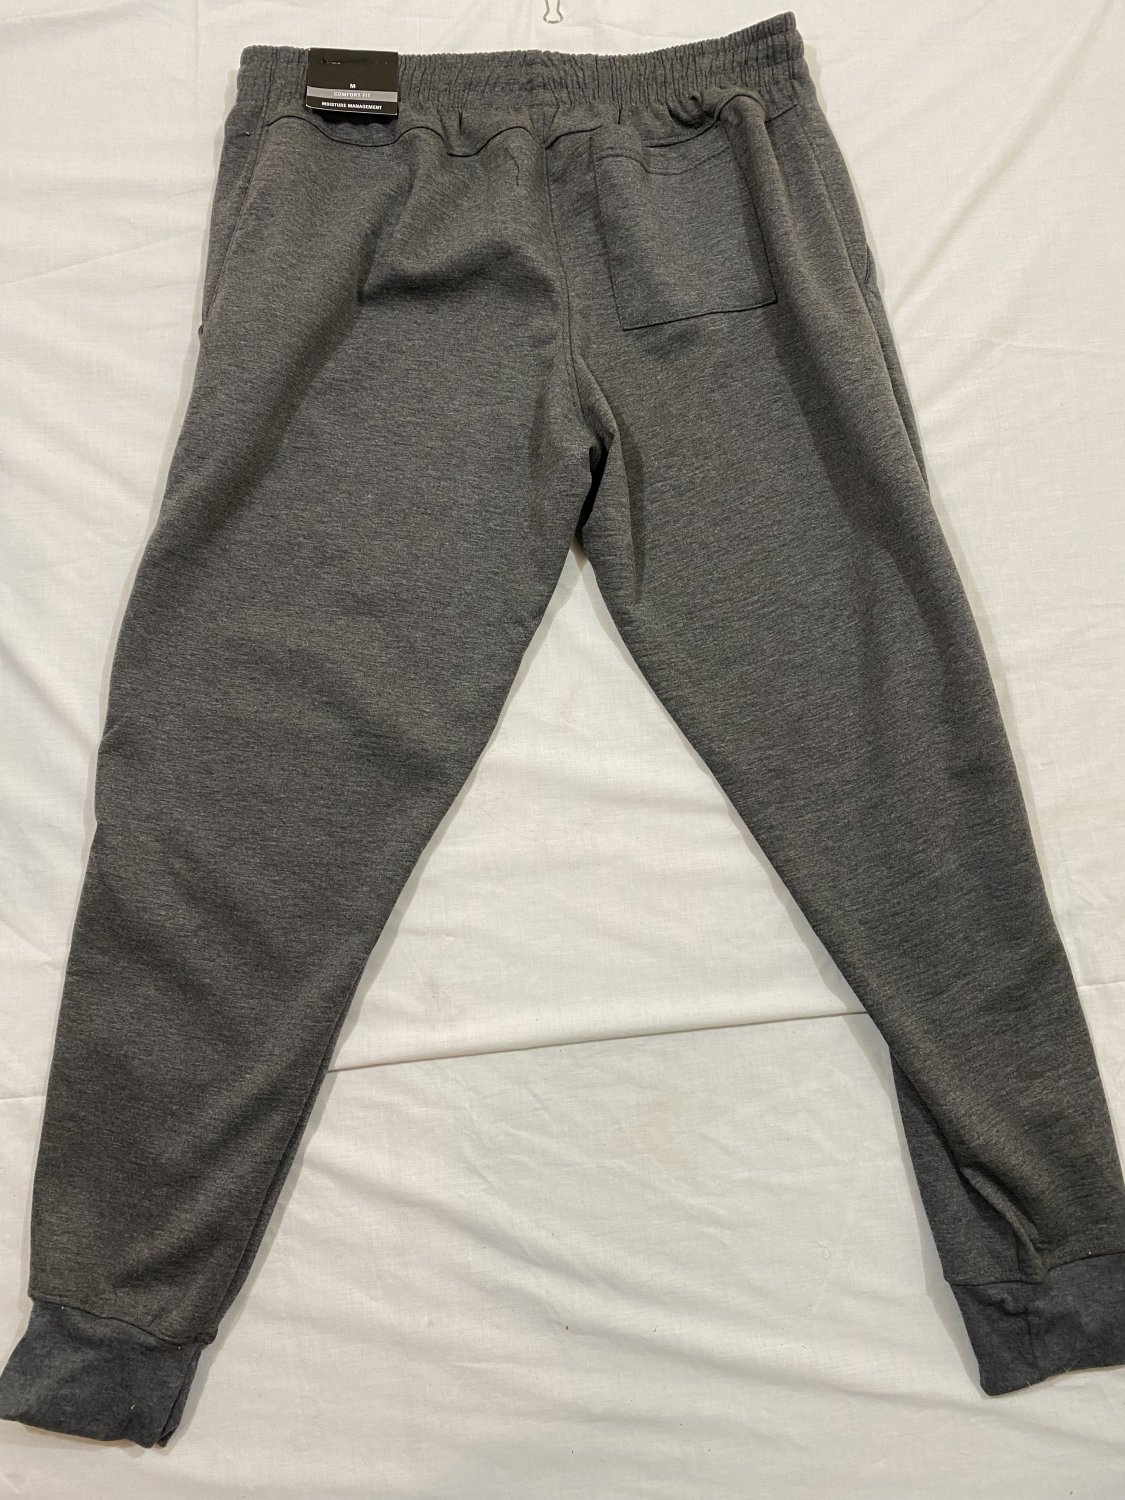 LEG3ND Grey Sweatpants Moisture Management Comfort Fit Pants Men's Medium